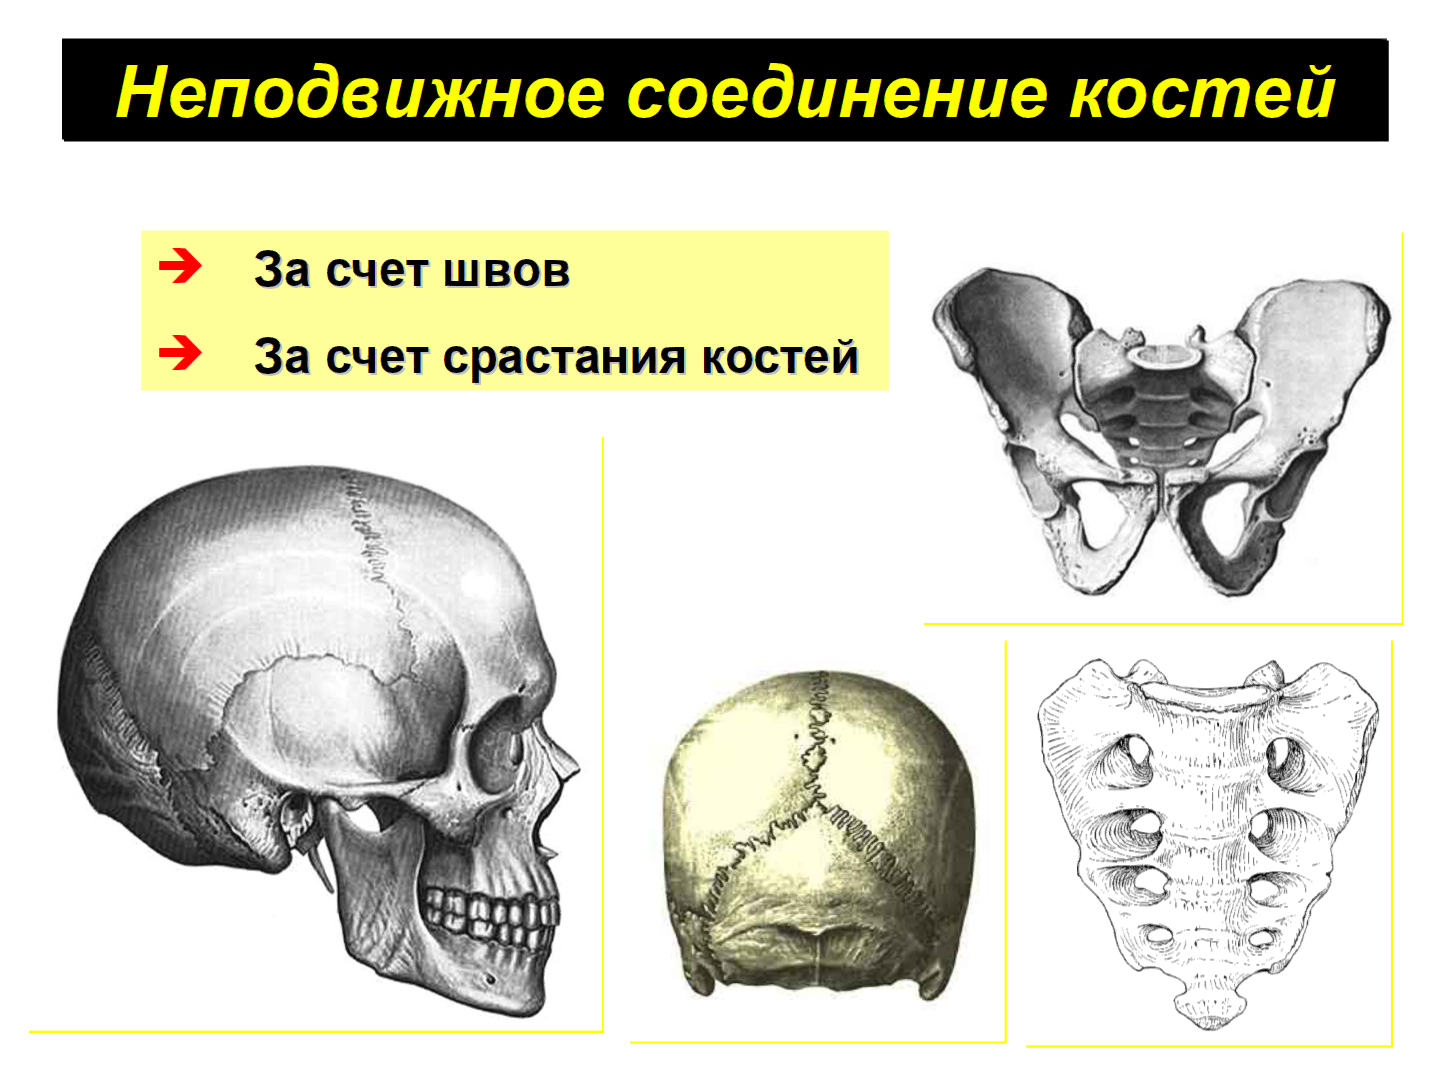 2 кости и их соединения. Неподвижные полуподвижные и подвижные соединения костей. Кости черепа неподвижные соединения. Кости с неподвижным соединением. Типы соединения костей.